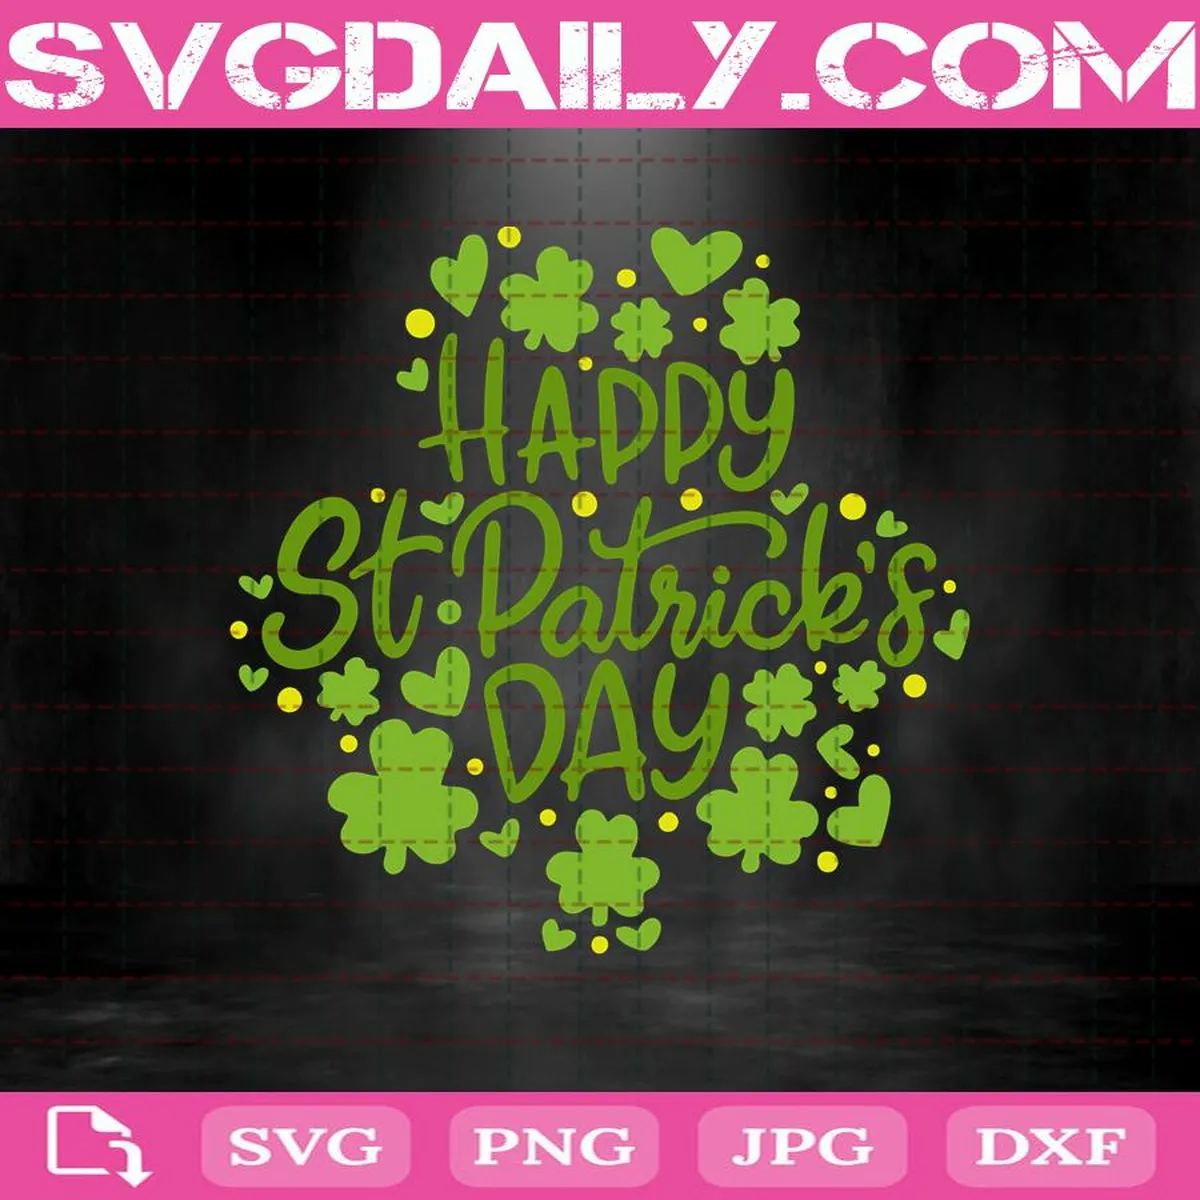 Happy St Patrick's Day Svg, St Patrick's Day Svg, Shamrock Svg, Clover Svg, Lucky Clover Svg, Svg Png Dxf Eps AI Instant Download